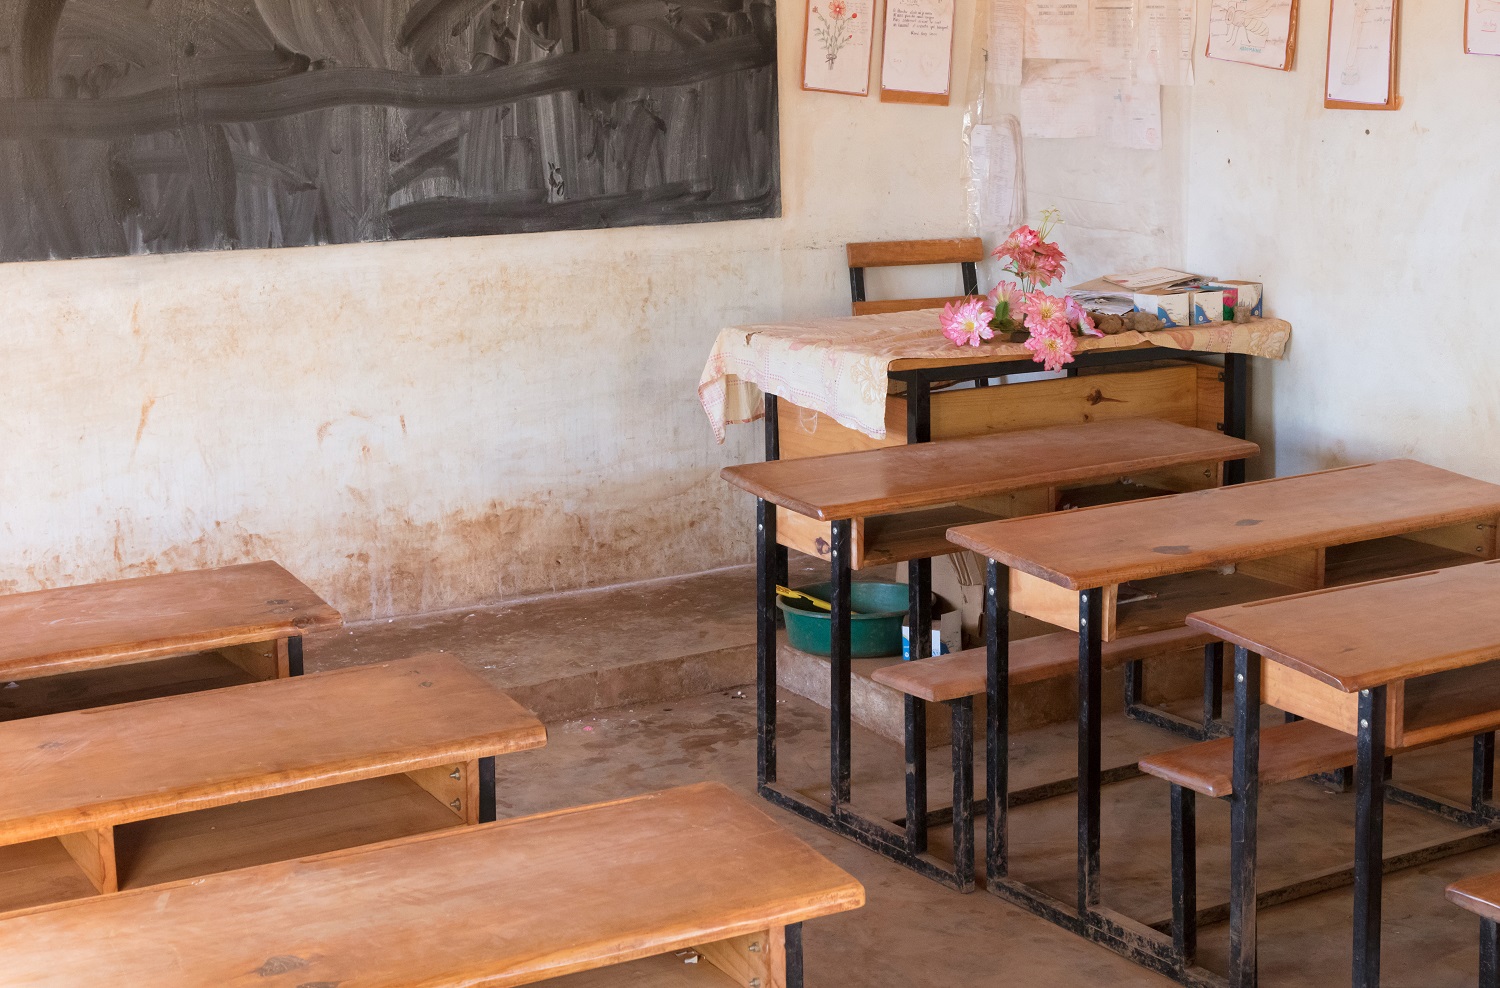 Image of desks in classroom